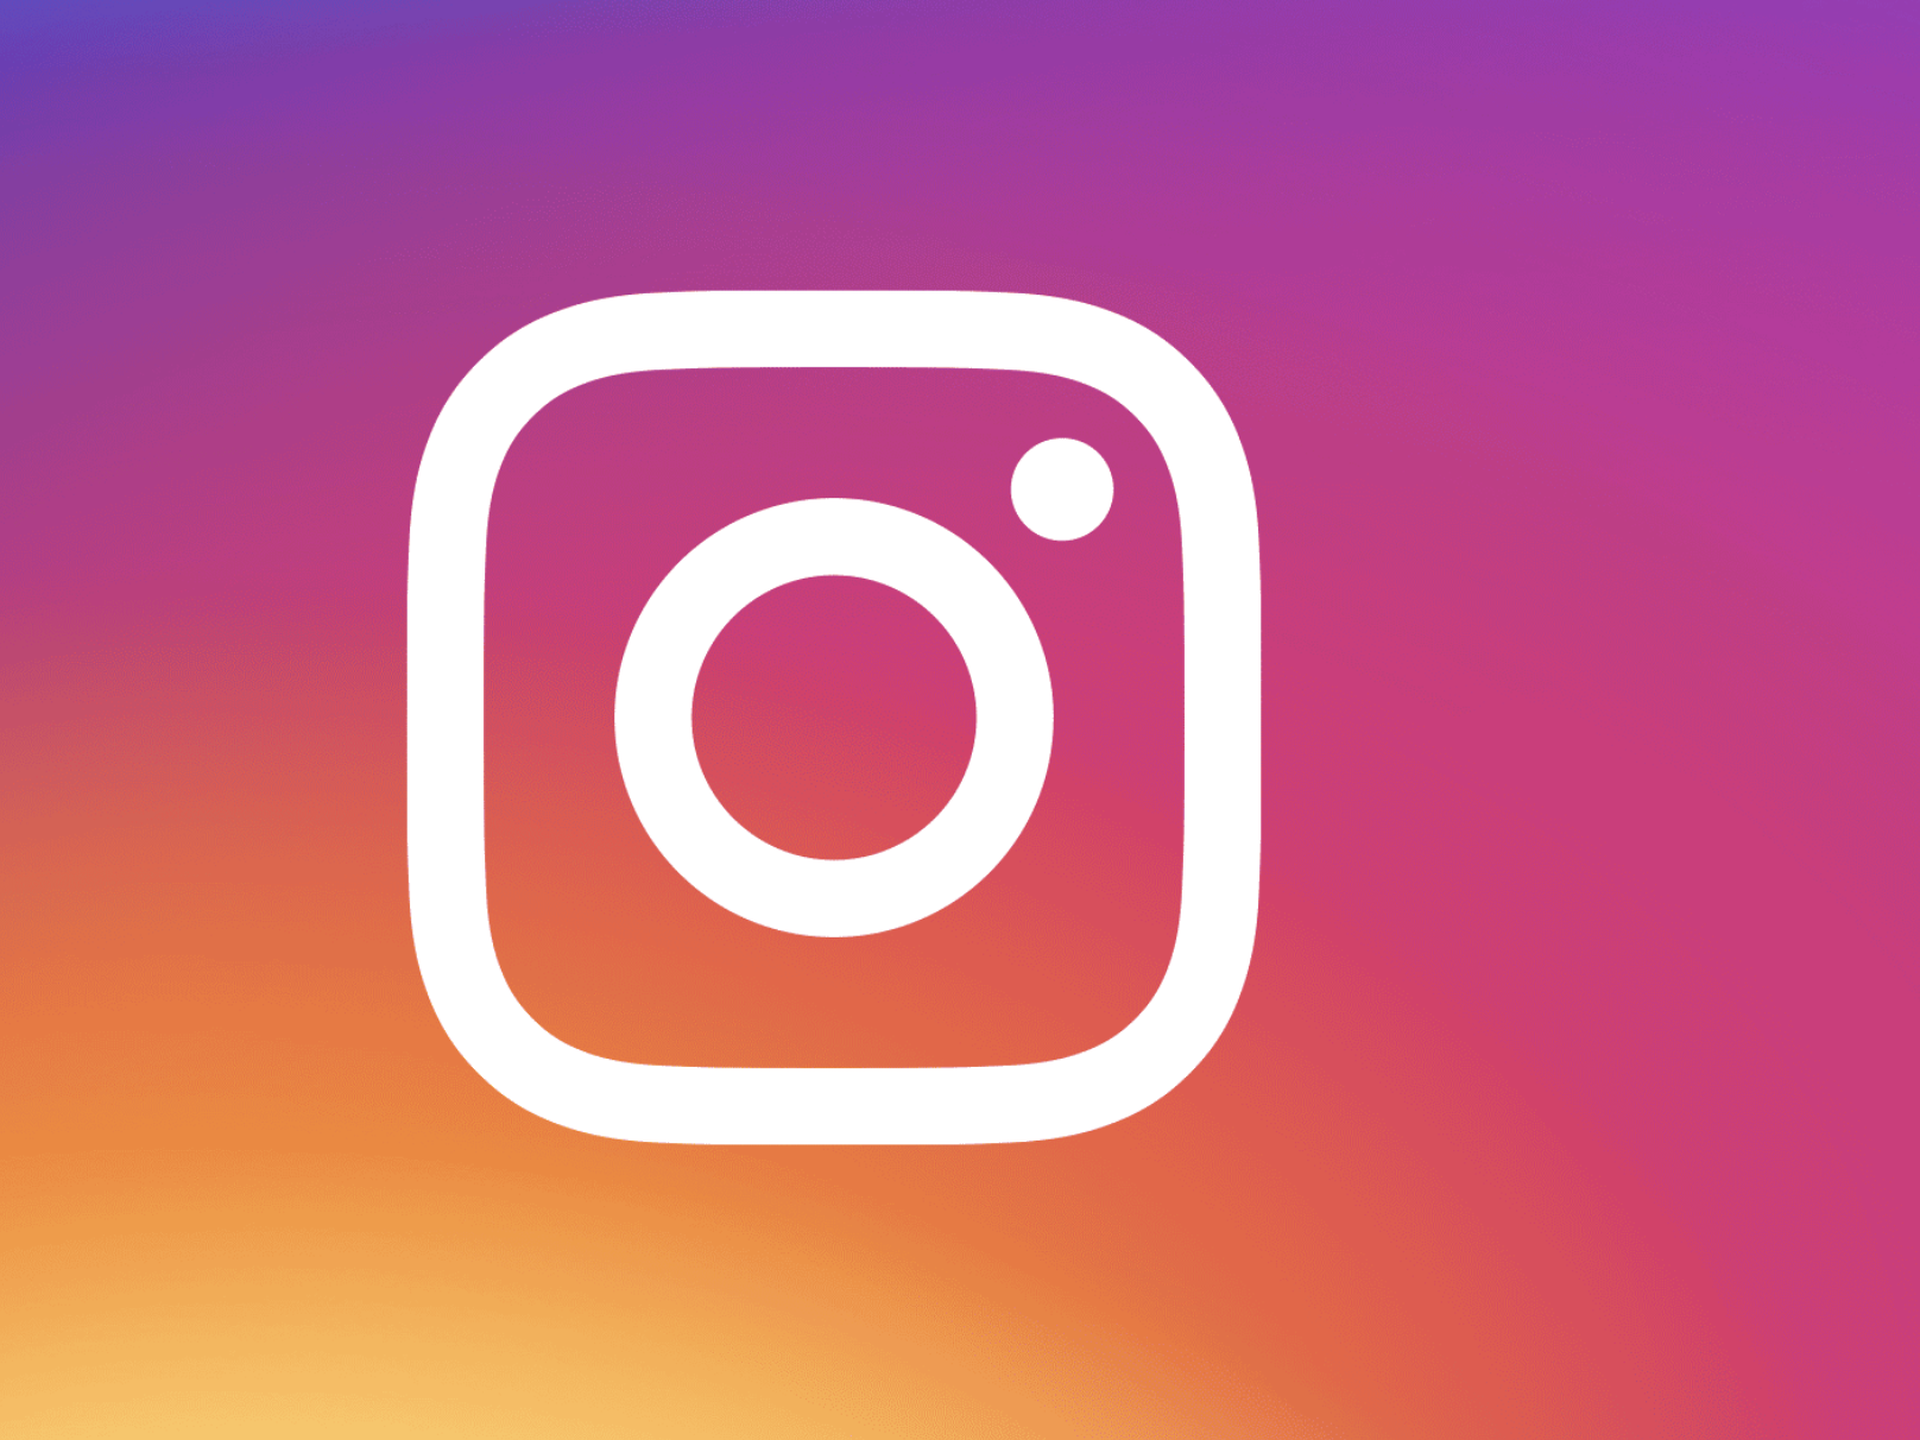 Instagram ad revenue: Bạn là một doanh nghiệp và muốn tìm hiểu cách tiếp cận khách hàng hiệu quả nhất? Hãy tìm hiểu về Instagram Ad Revenue vì nó cung cấp thông tin về việc tăng độ nhận biết thương hiệu và doanh số bán hàng. Xem ảnh liên quan đến từ khóa này để biết các chiến lược quảng cáo được áp dụng bởi các doanh nghiệp thành công.